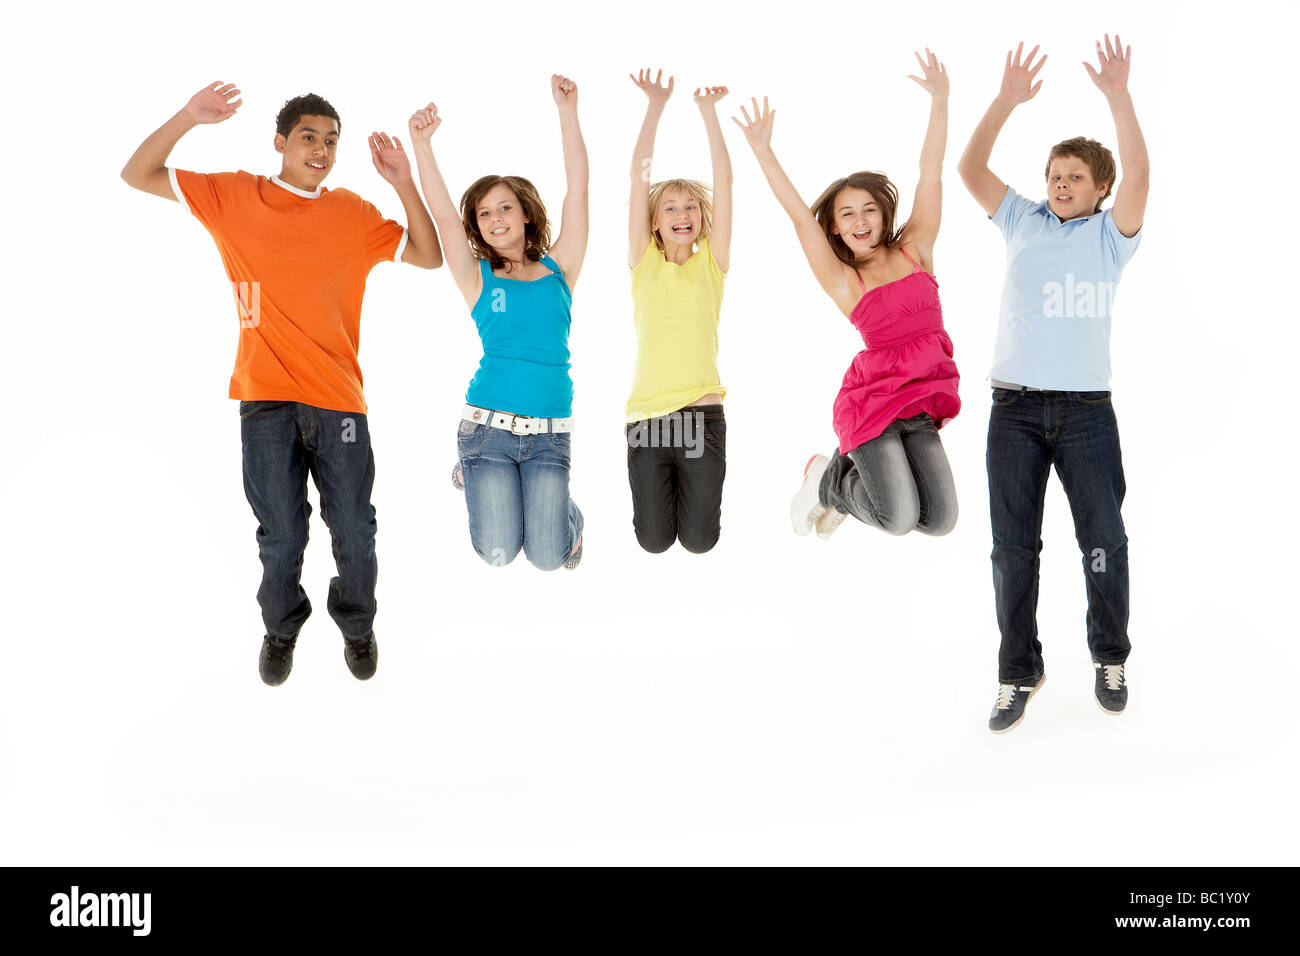 Groupe de cinq jeunes enfants Jumping In Studio Banque D'Images